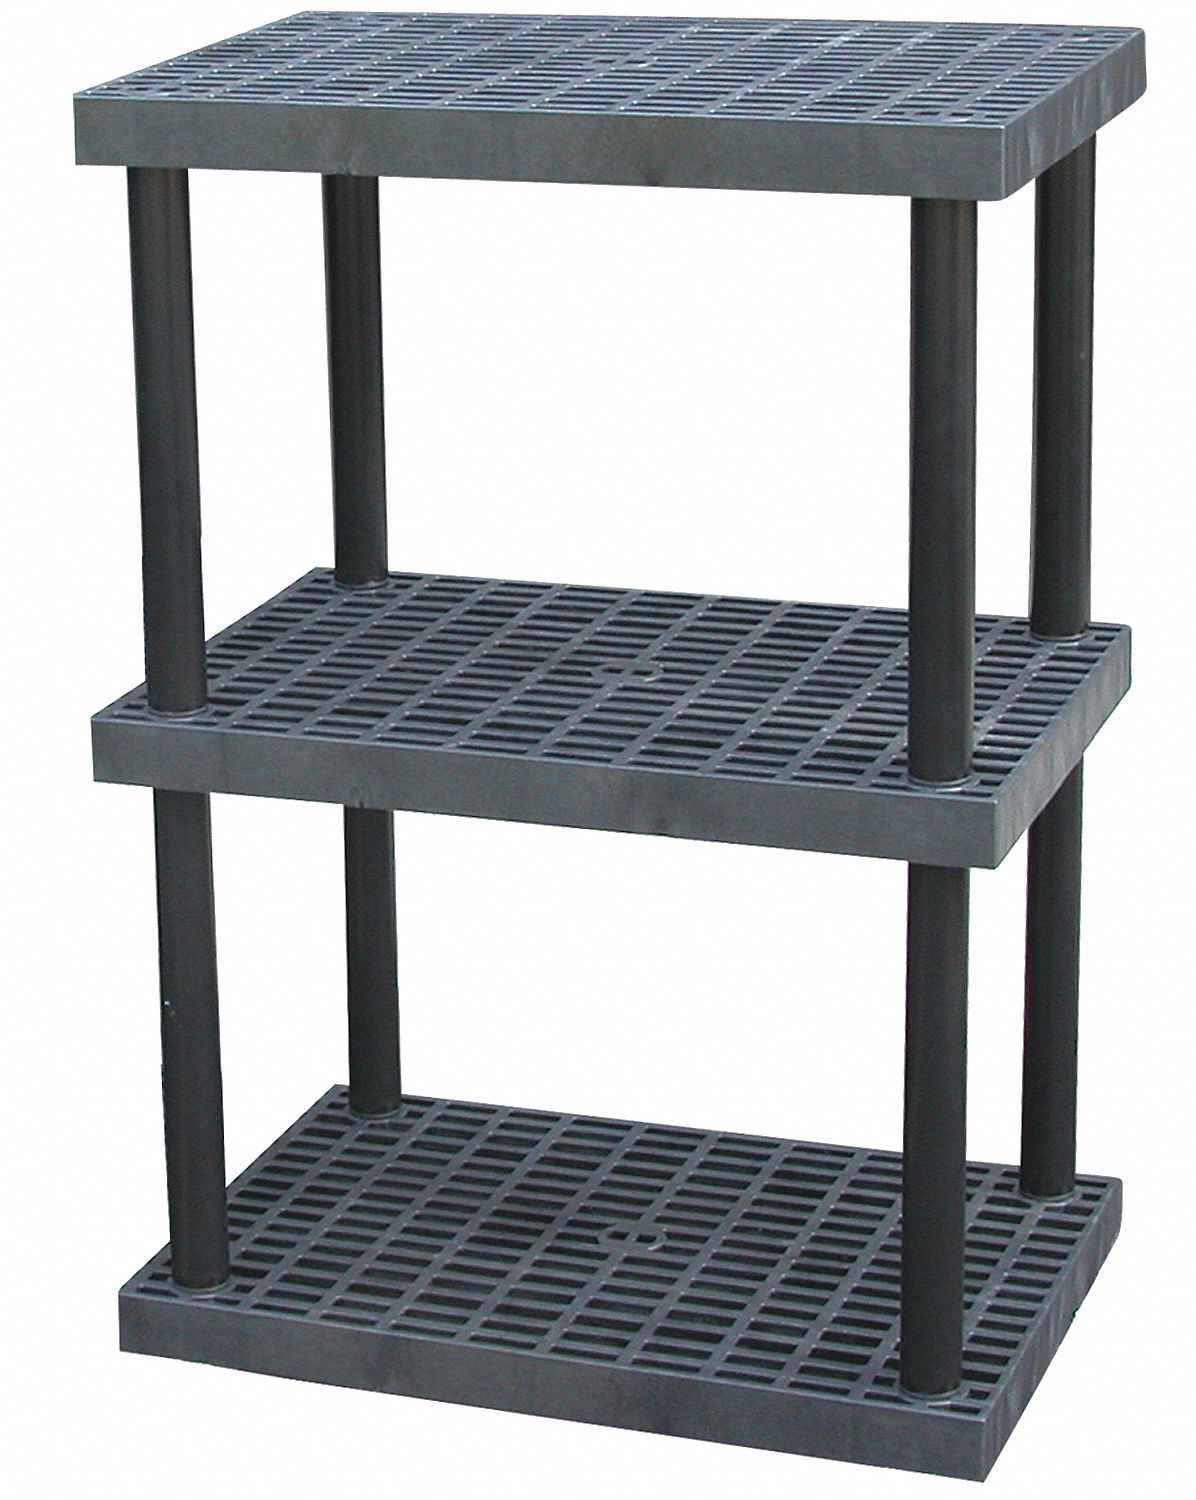  Structural Plastics Dura-Shelf - Estantería de plástico con  estantes ajustables, 36 pulgadas de ancho x 16 pulgadas de profundidad,  estantes ventilados con parte superior de rejilla - 3 estantes : Hogar y  Cocina